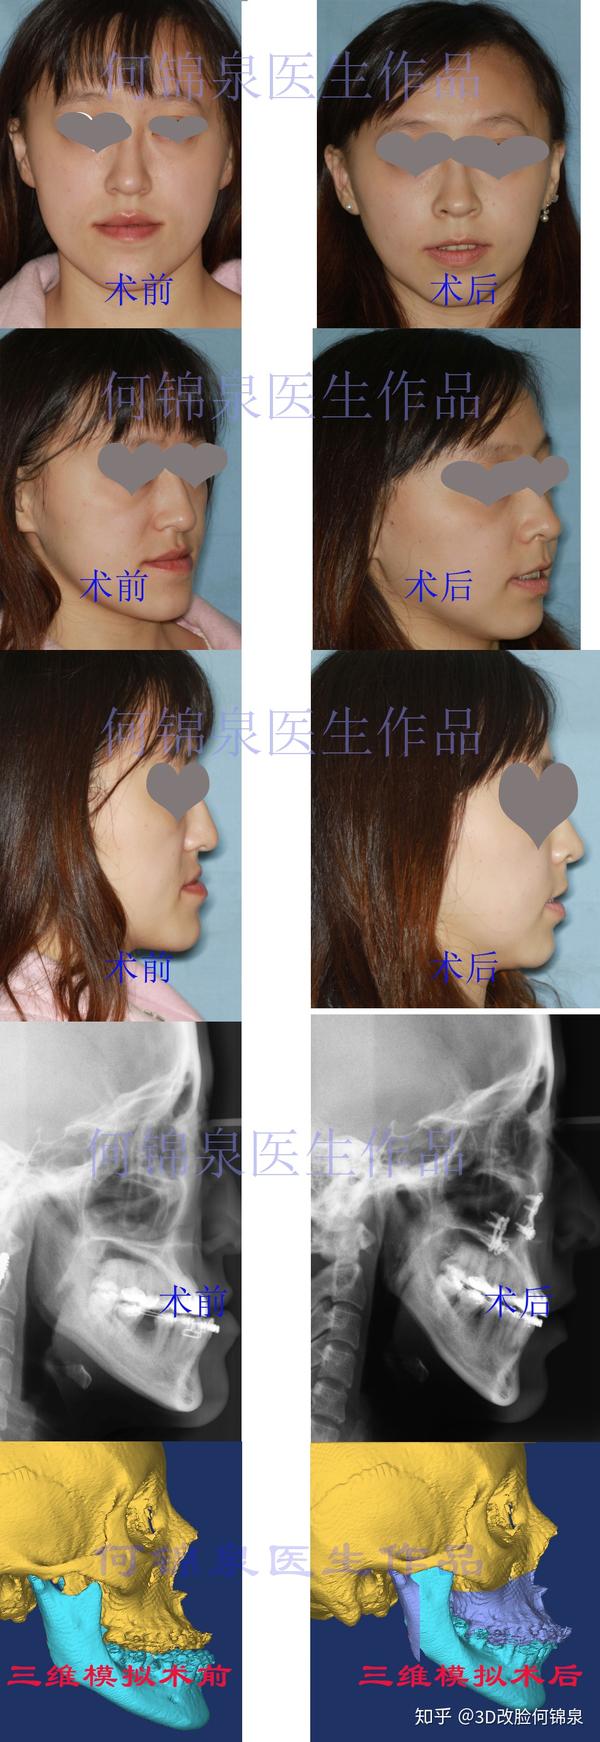 面型,主要问题是下颌向前突出,鼻旁区凹陷,鼻唇角呈锐角,牙齿反颌